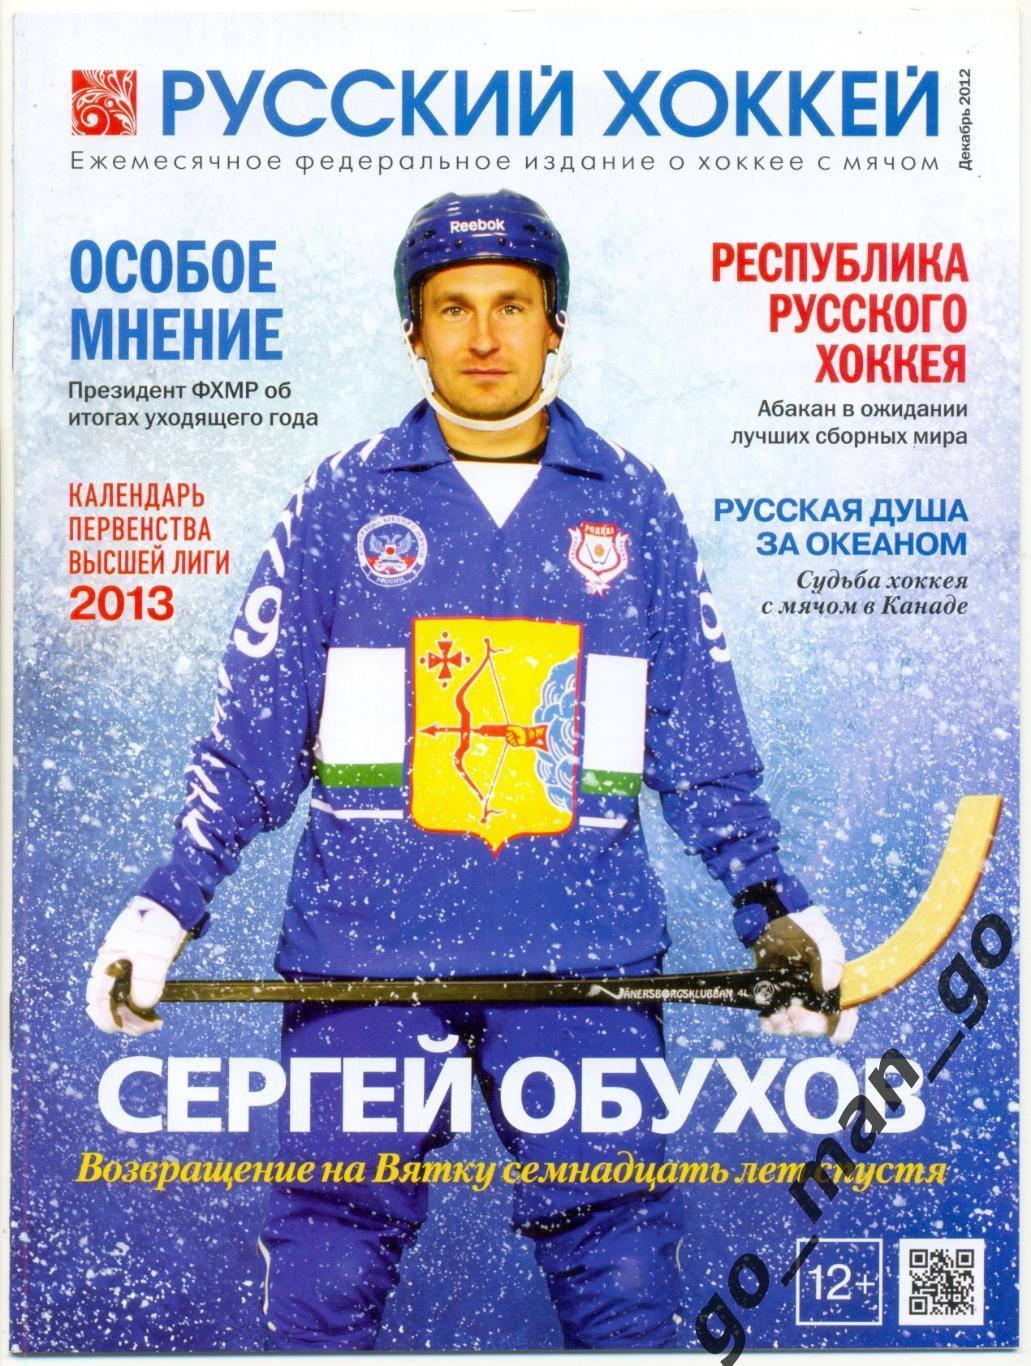 Журнал РУССКИЙ ХОККЕЙ, декабрь 2012.